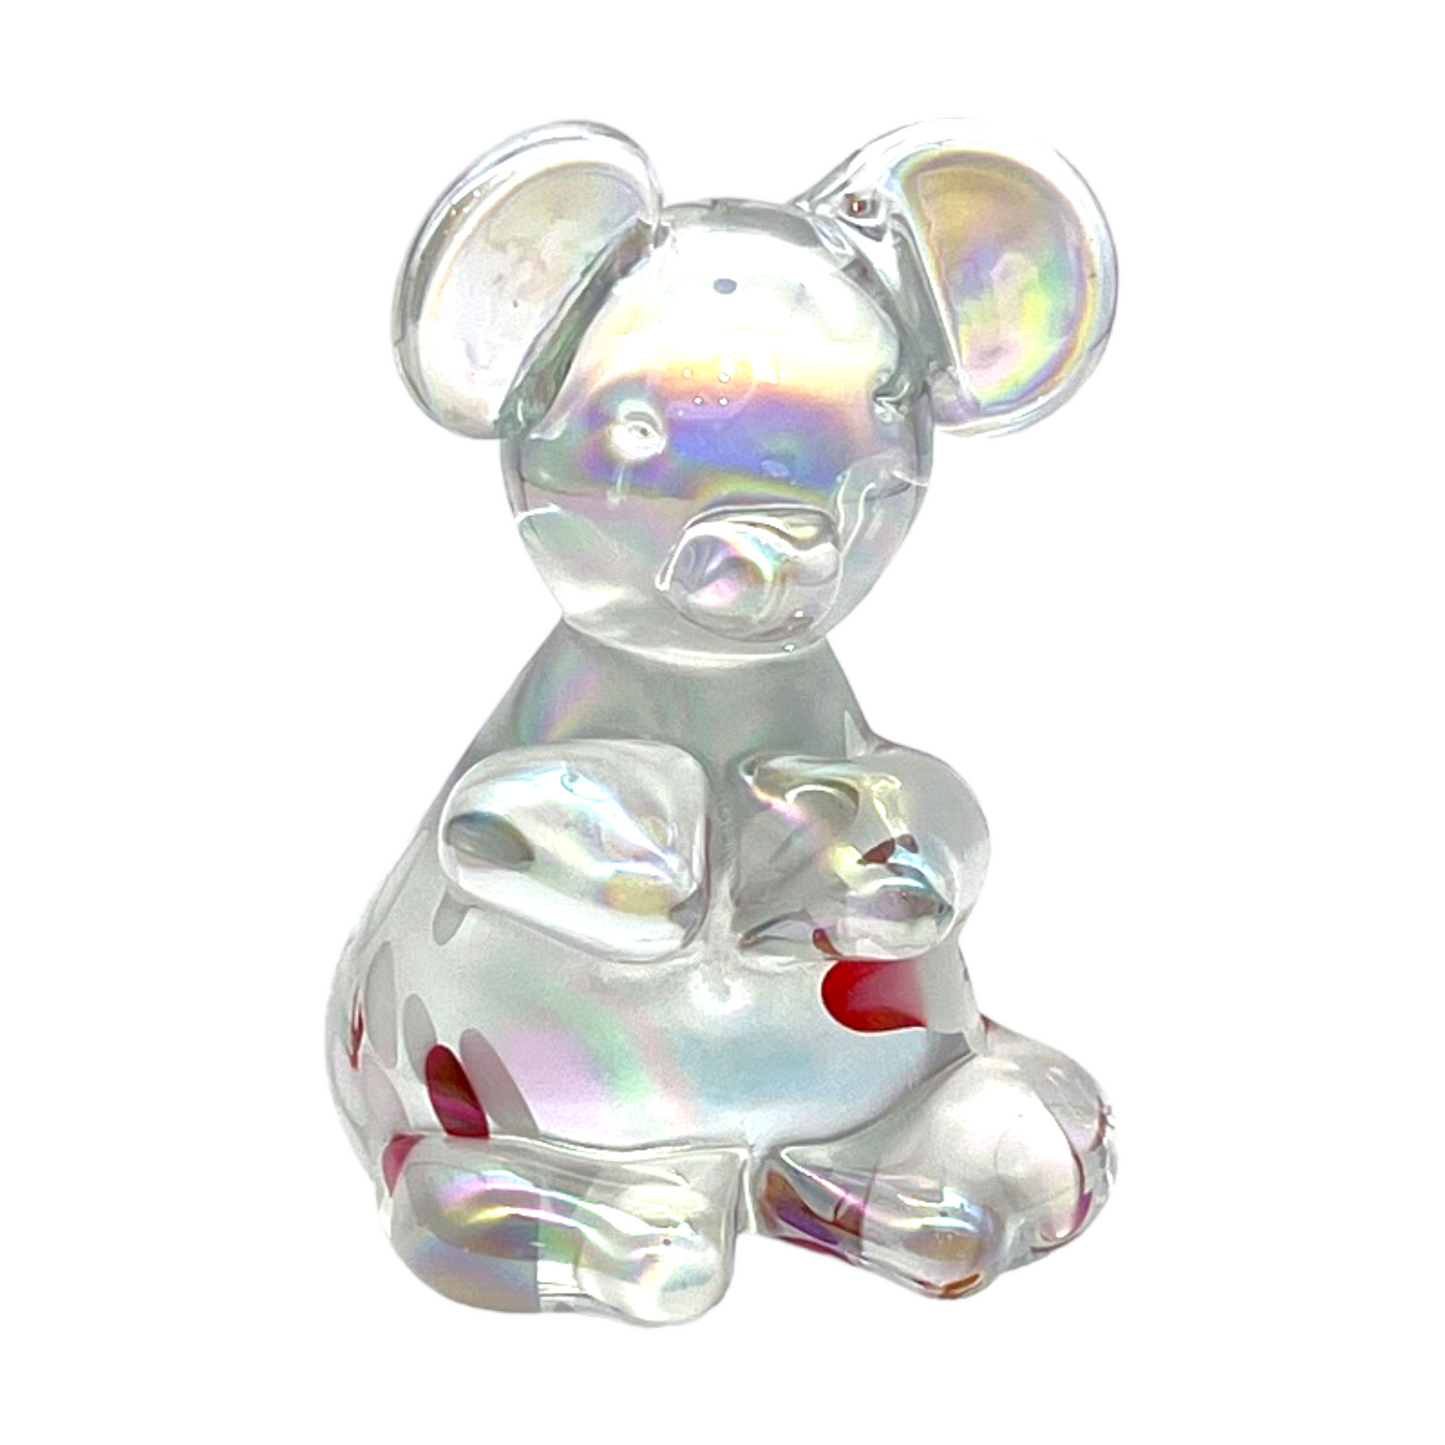 Opaline Splatter Glass Bear Sculpture - 4"